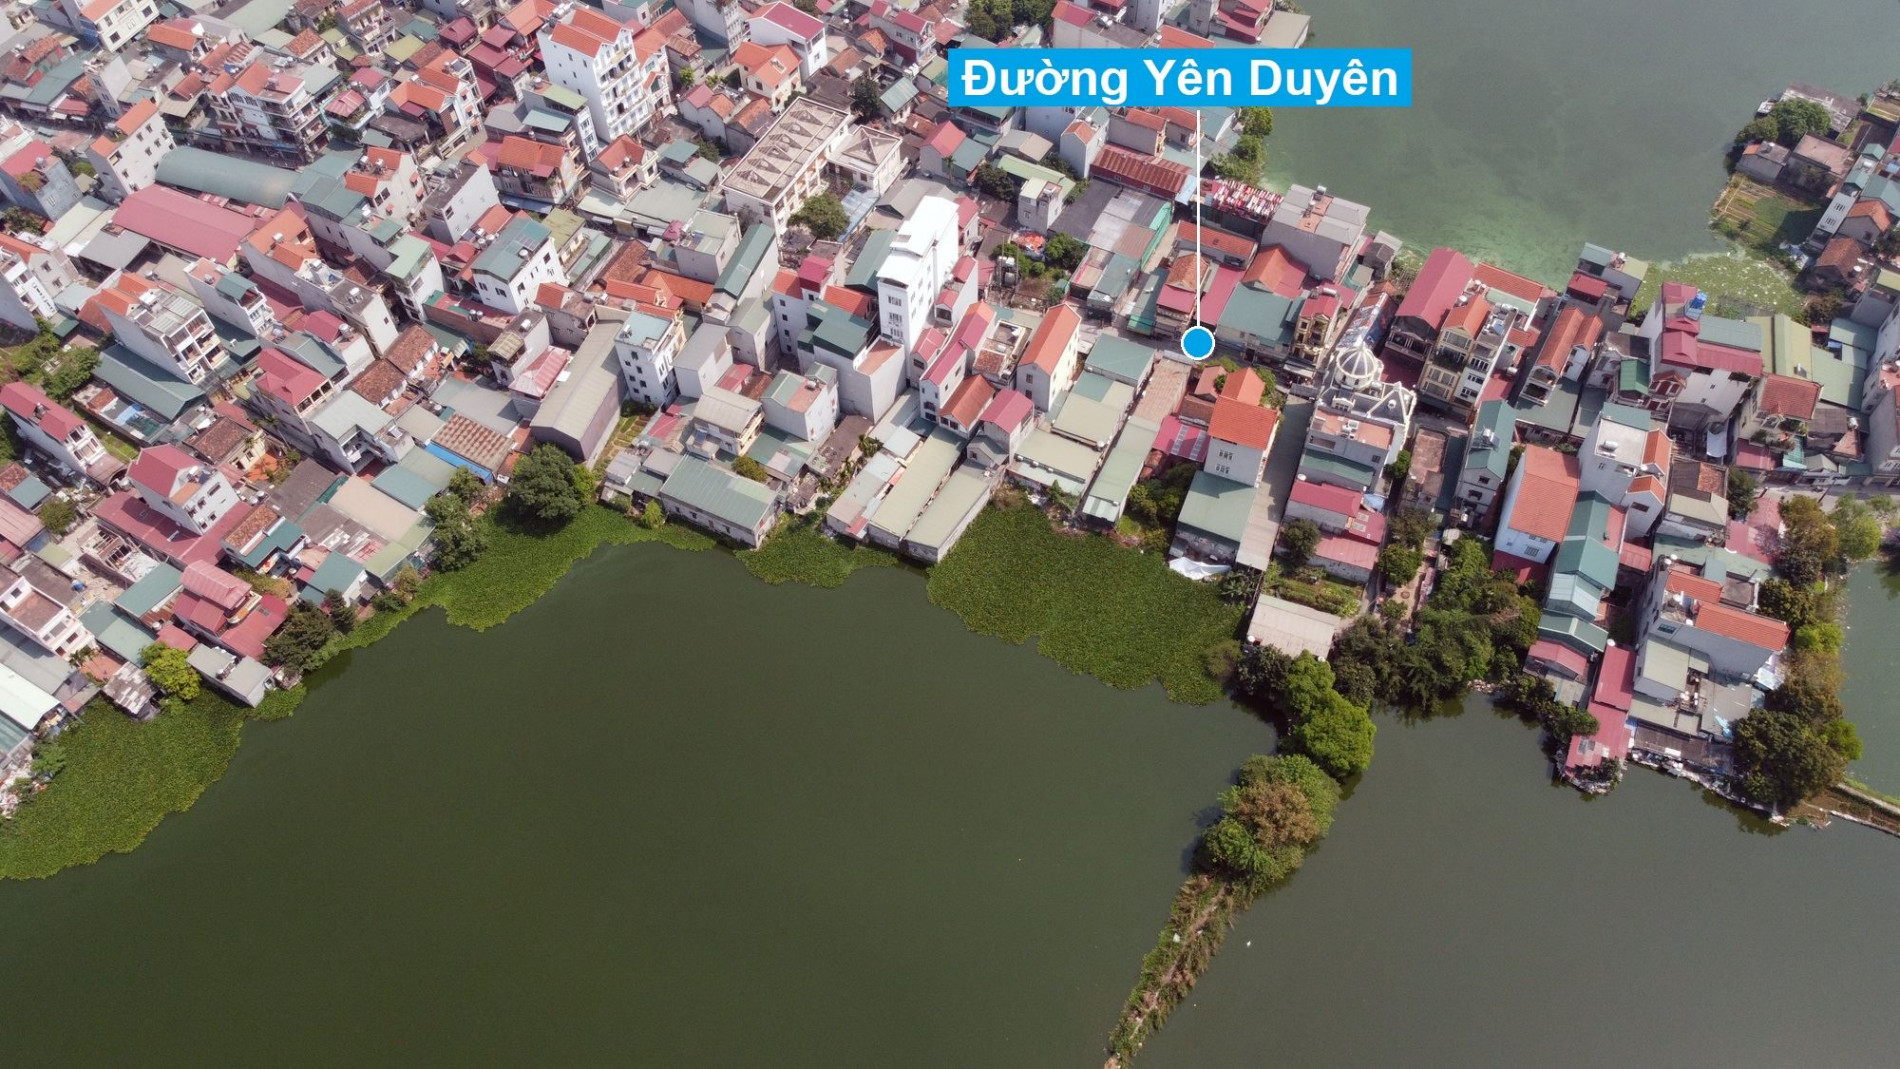 Sắp lấp nhiều hồ để làm nhà, làm đường ở quận Hoàng Mai, Hà Nội (phần 1)